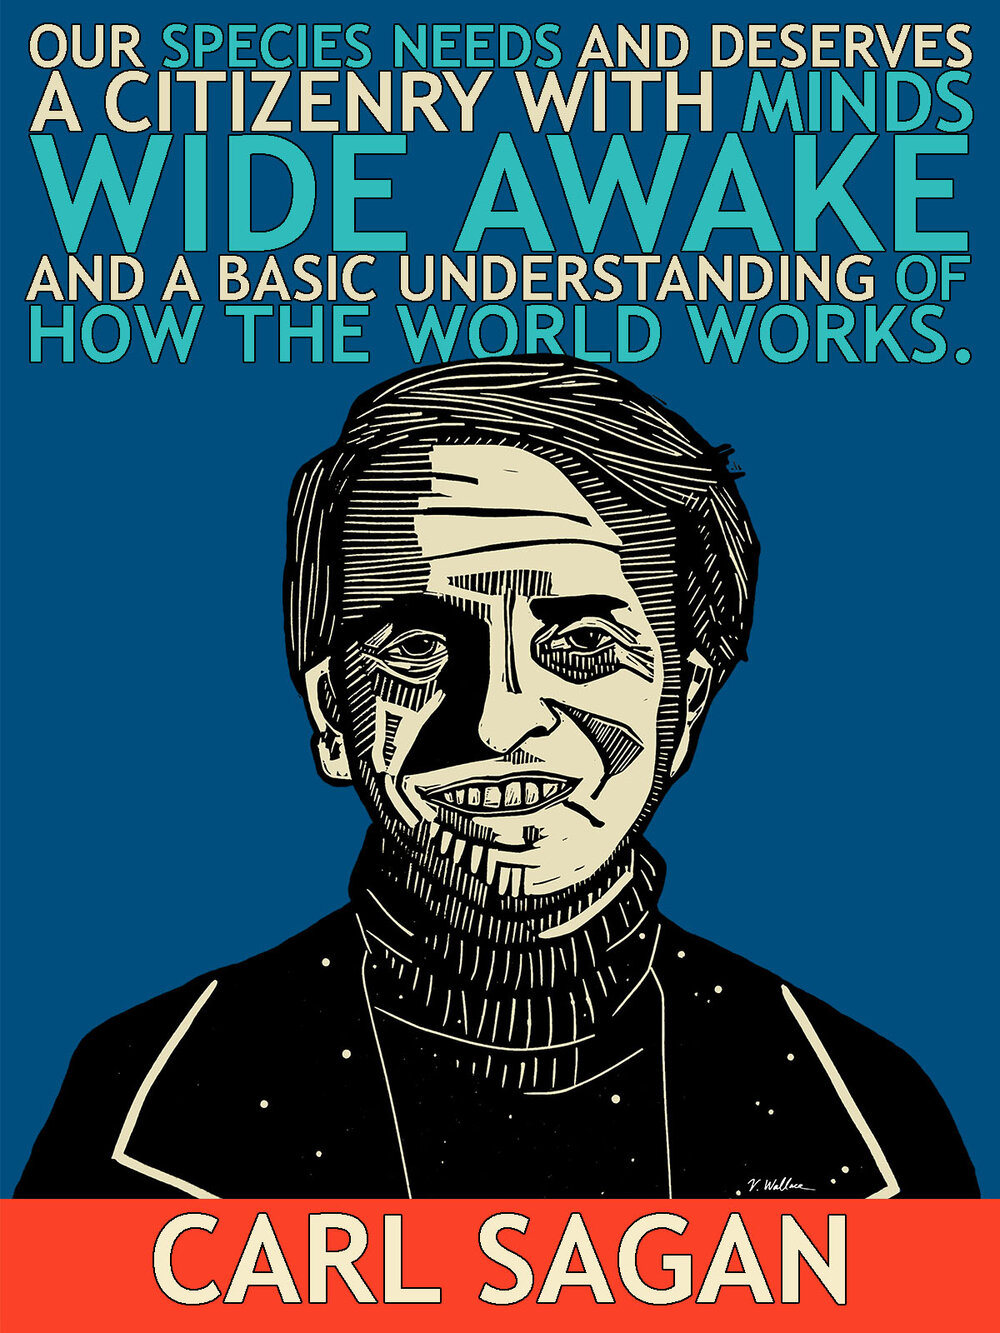 Carl Sagan small poster.jpg